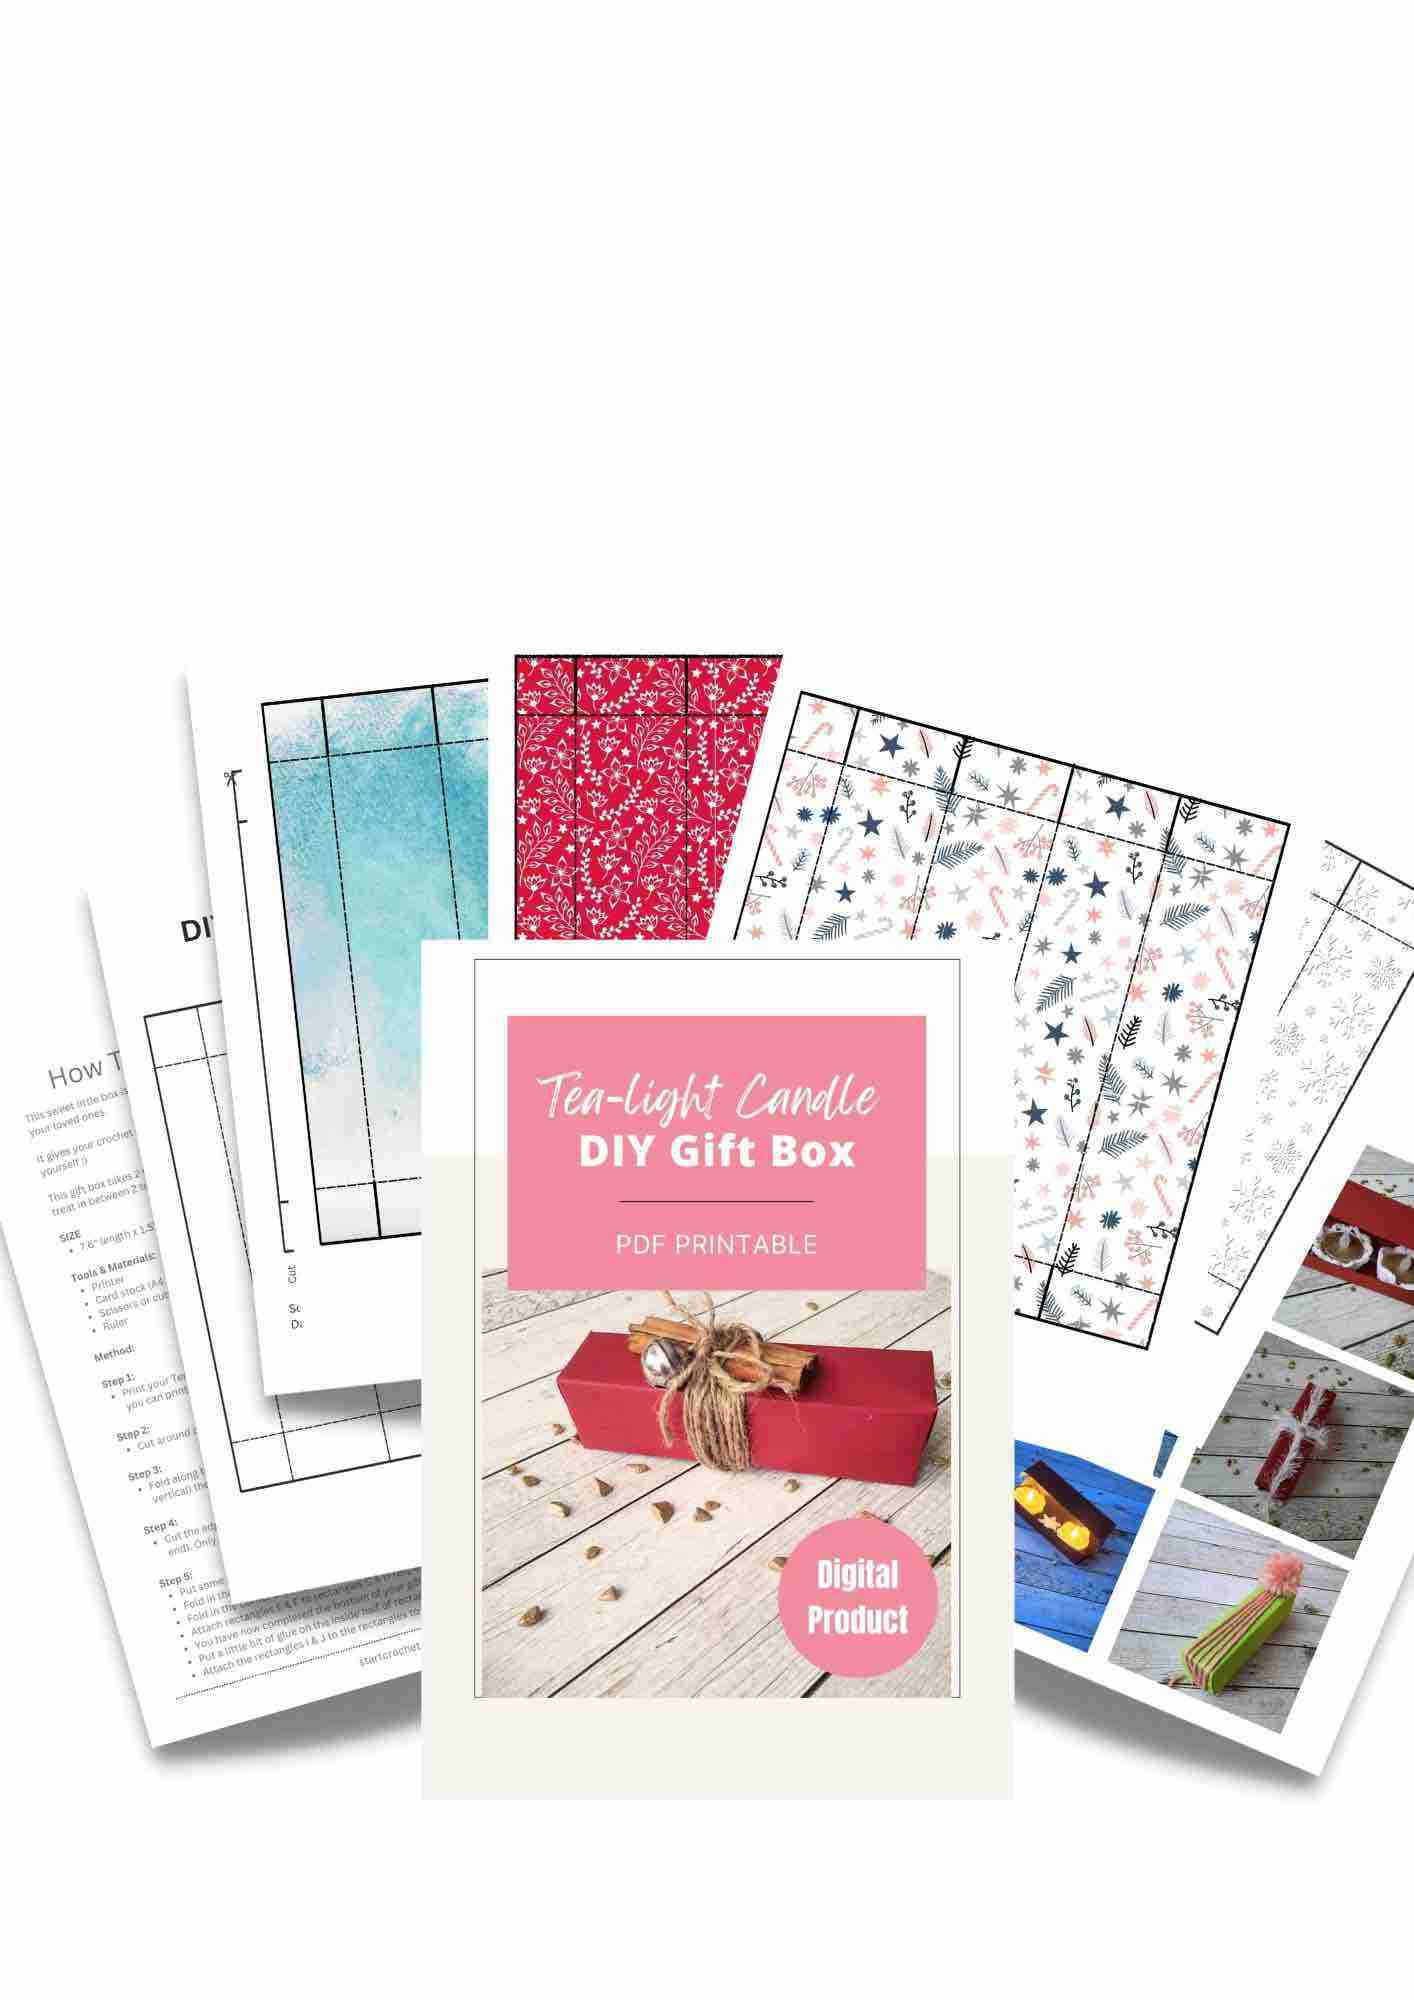 DIY Gift Box Template Printable